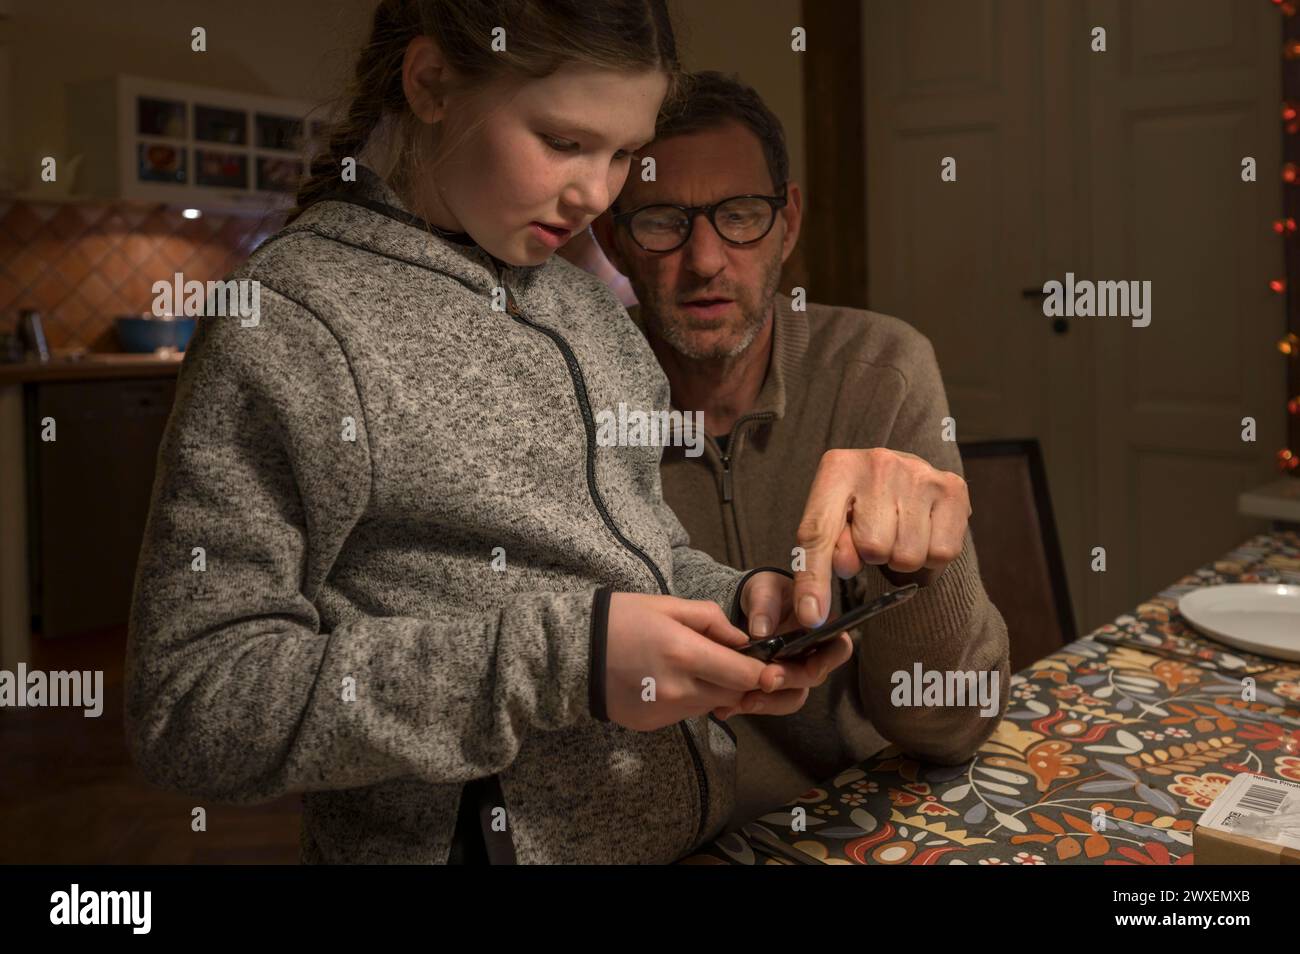 Vater und Tochter, 10 Jahre alt, suchen etwas mit ihrem Handy, Mecklenburg-Vorpommern, Deutschland Stockfoto